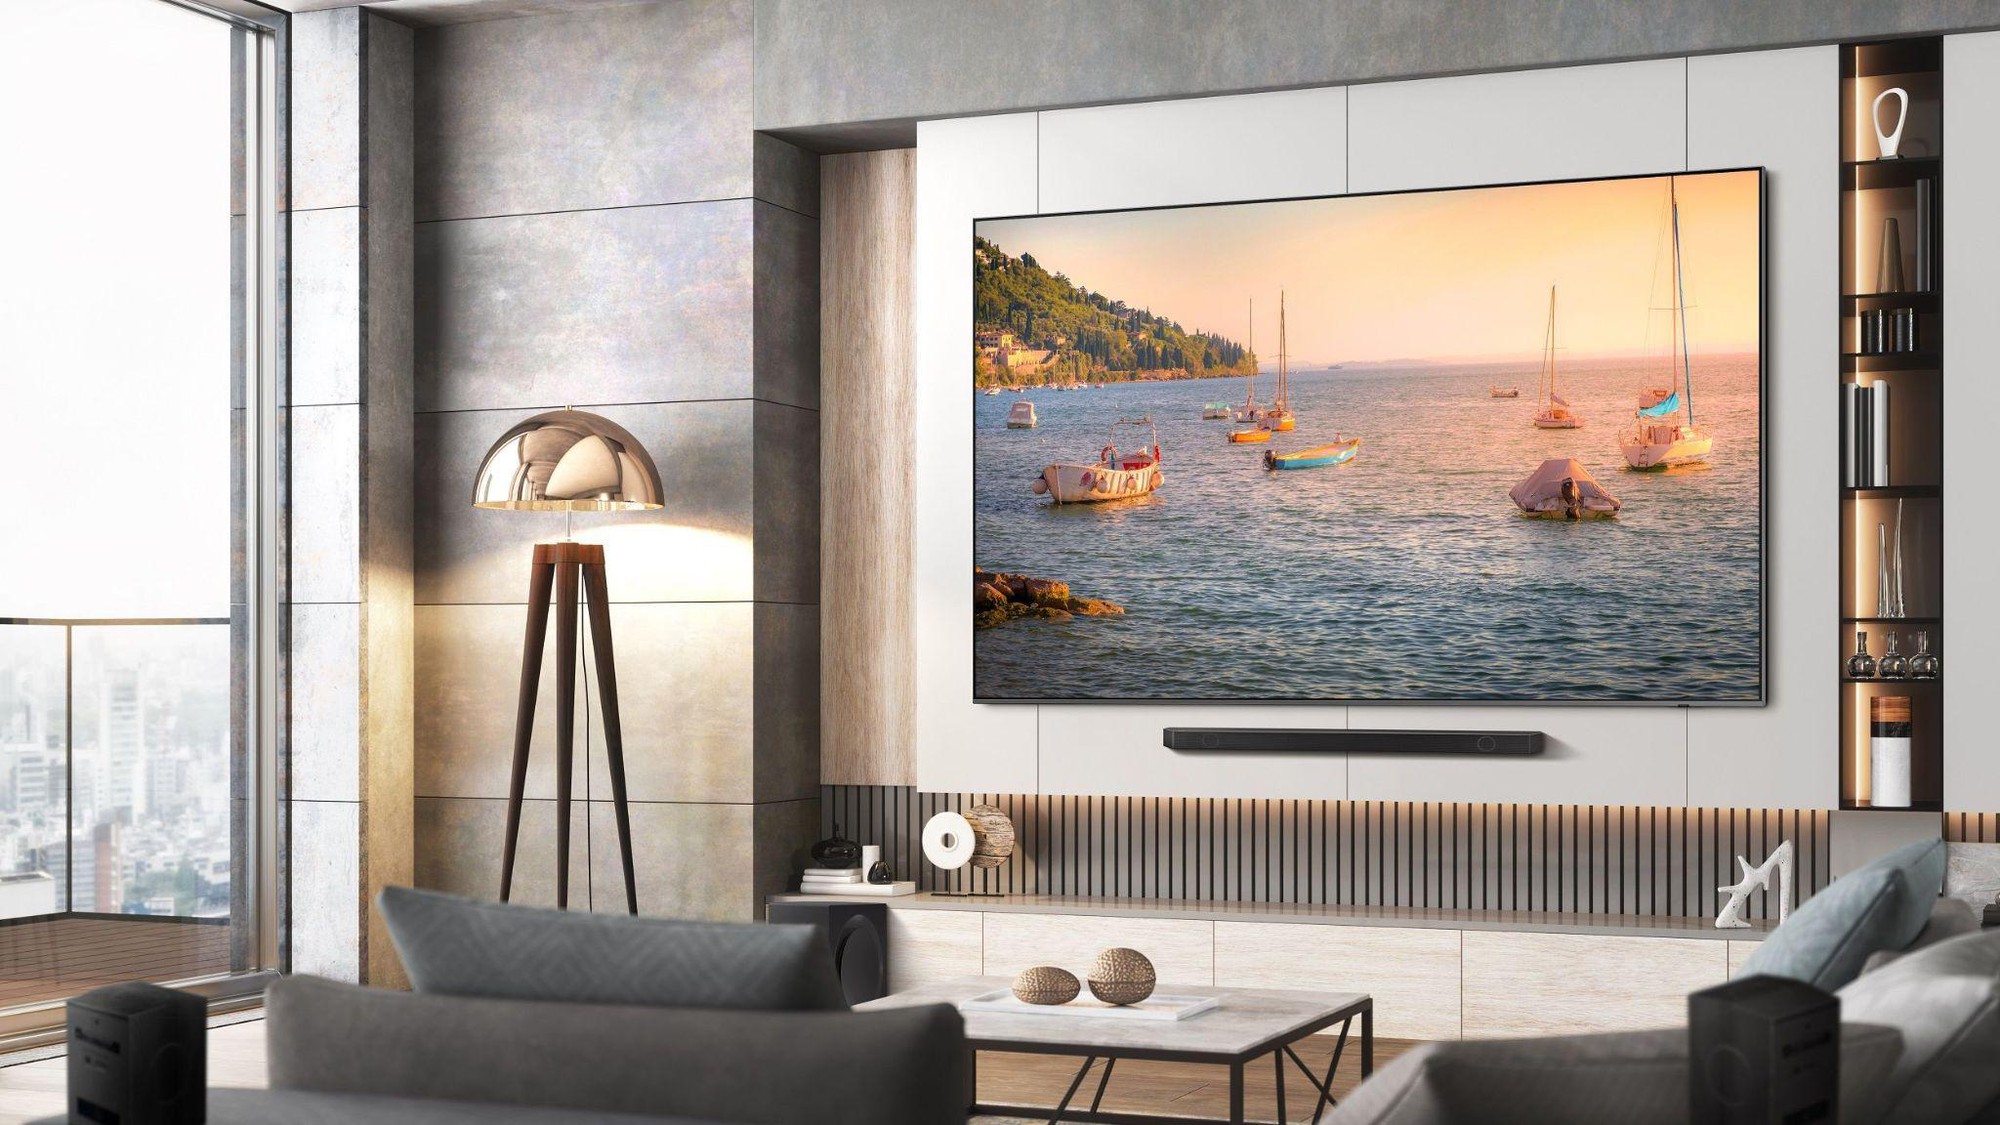  Samsung mở rộng danh mục TV cỡ lớn, mang đến trải nghiệm nghe nhìn vượt trội với TV QLED 98 inch - Ảnh 3.